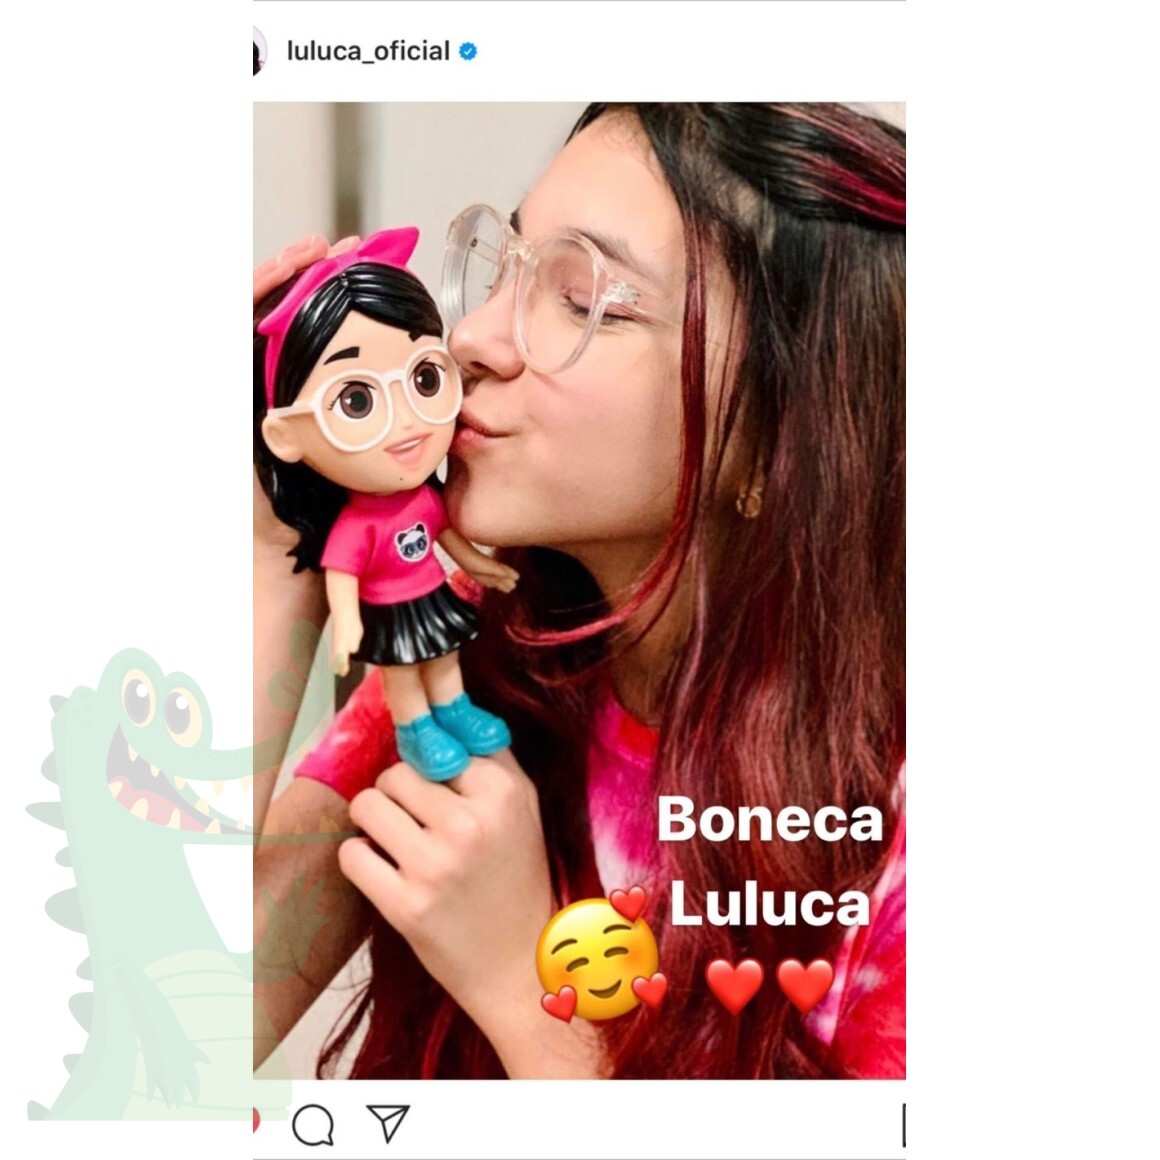 Boneca Luluca com Som, Estrela : : Brinquedos e Jogos